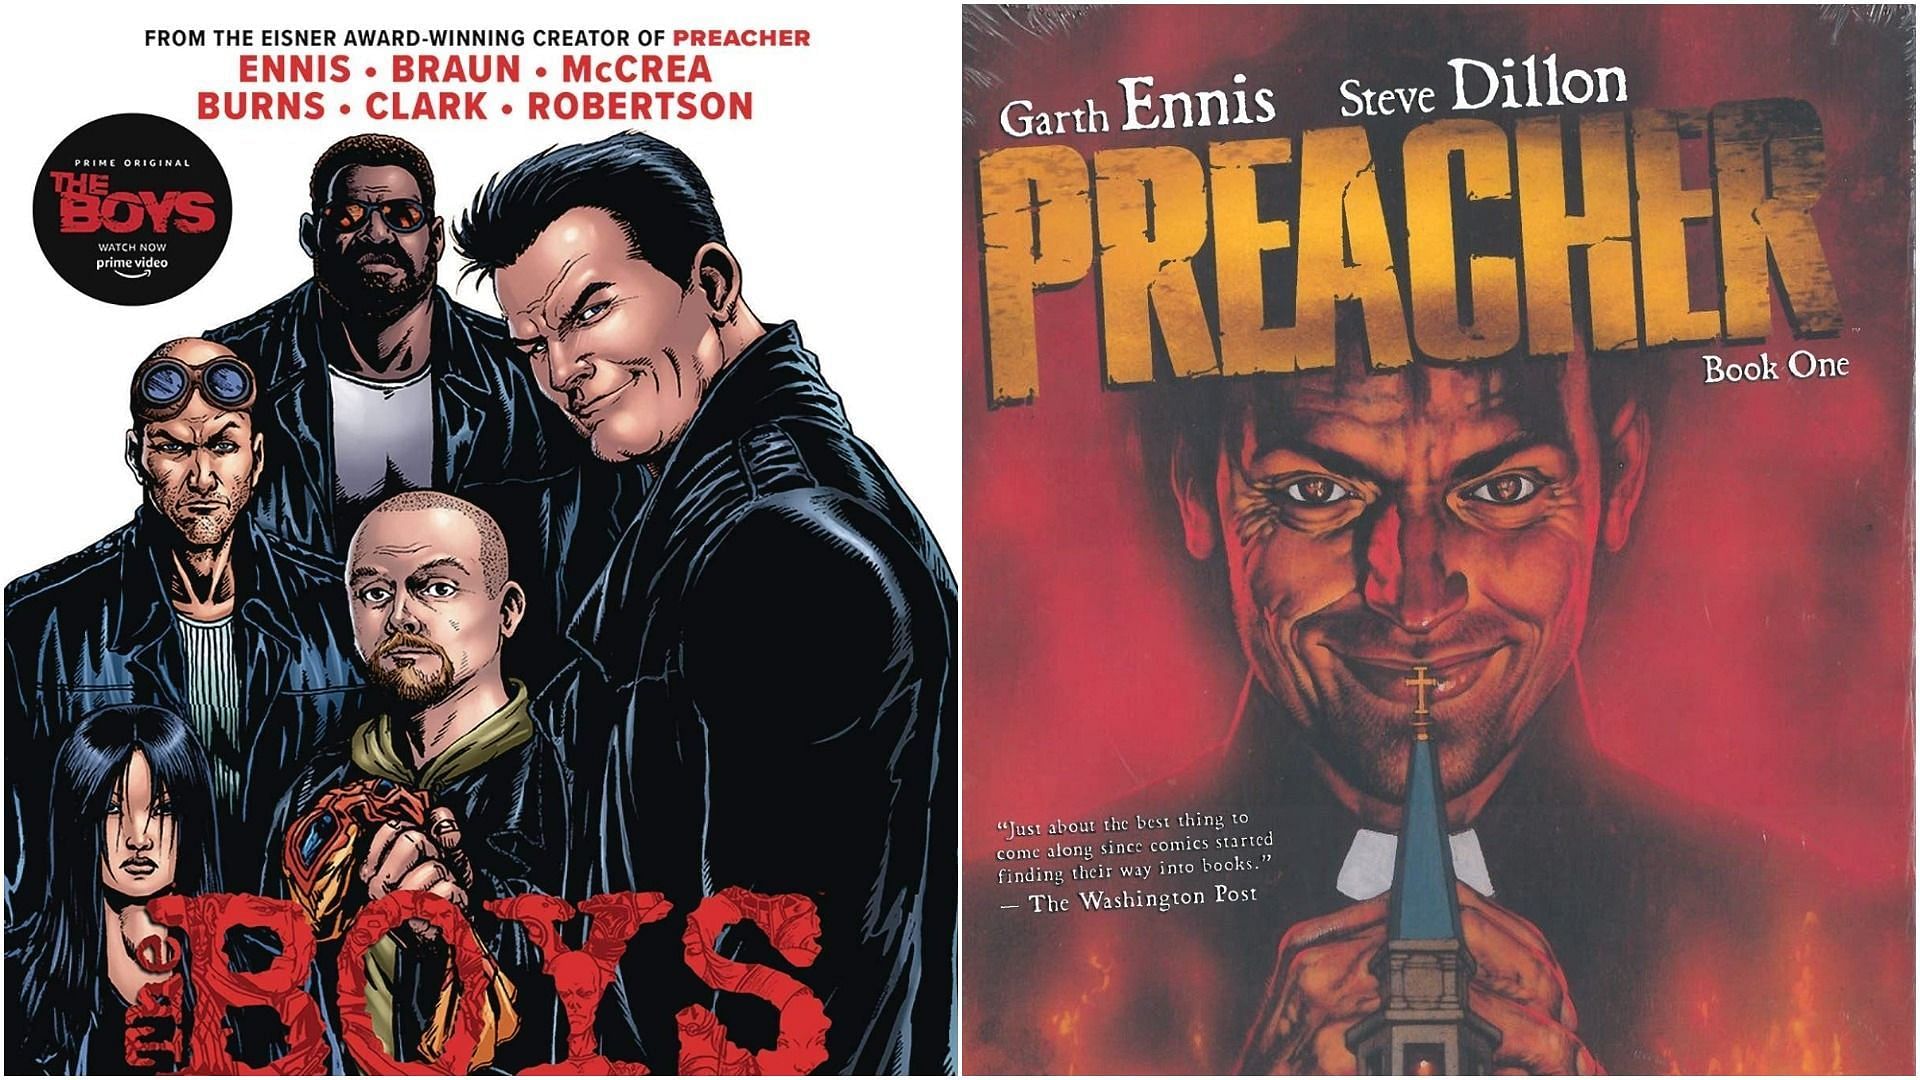 Garth Ennis&#039; The Boys and Preacher comics (Image via Dynamite Comics and Vertigo)